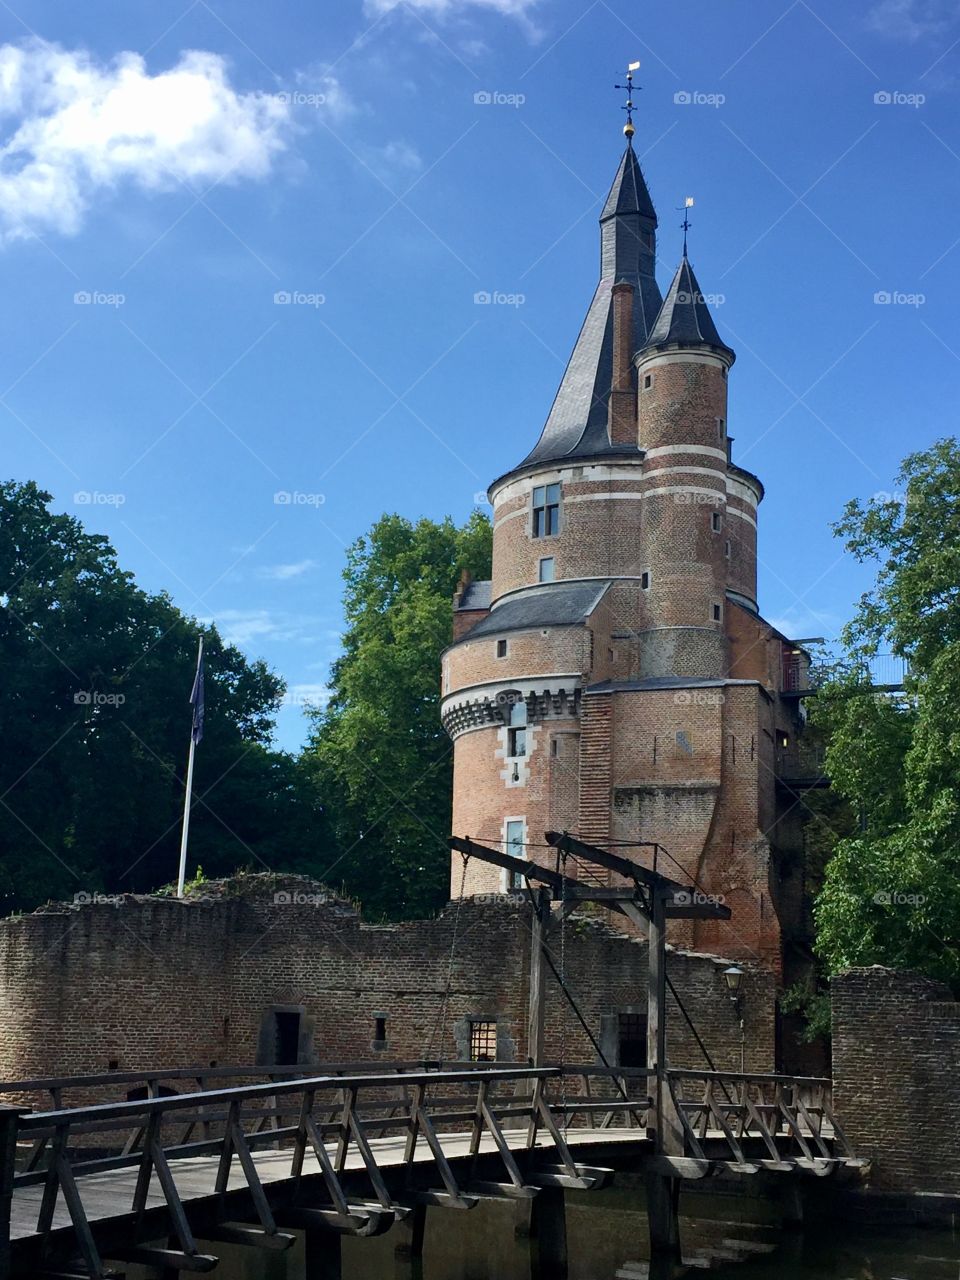 Castle, Wijk bij Duurstede, the Netherlands 